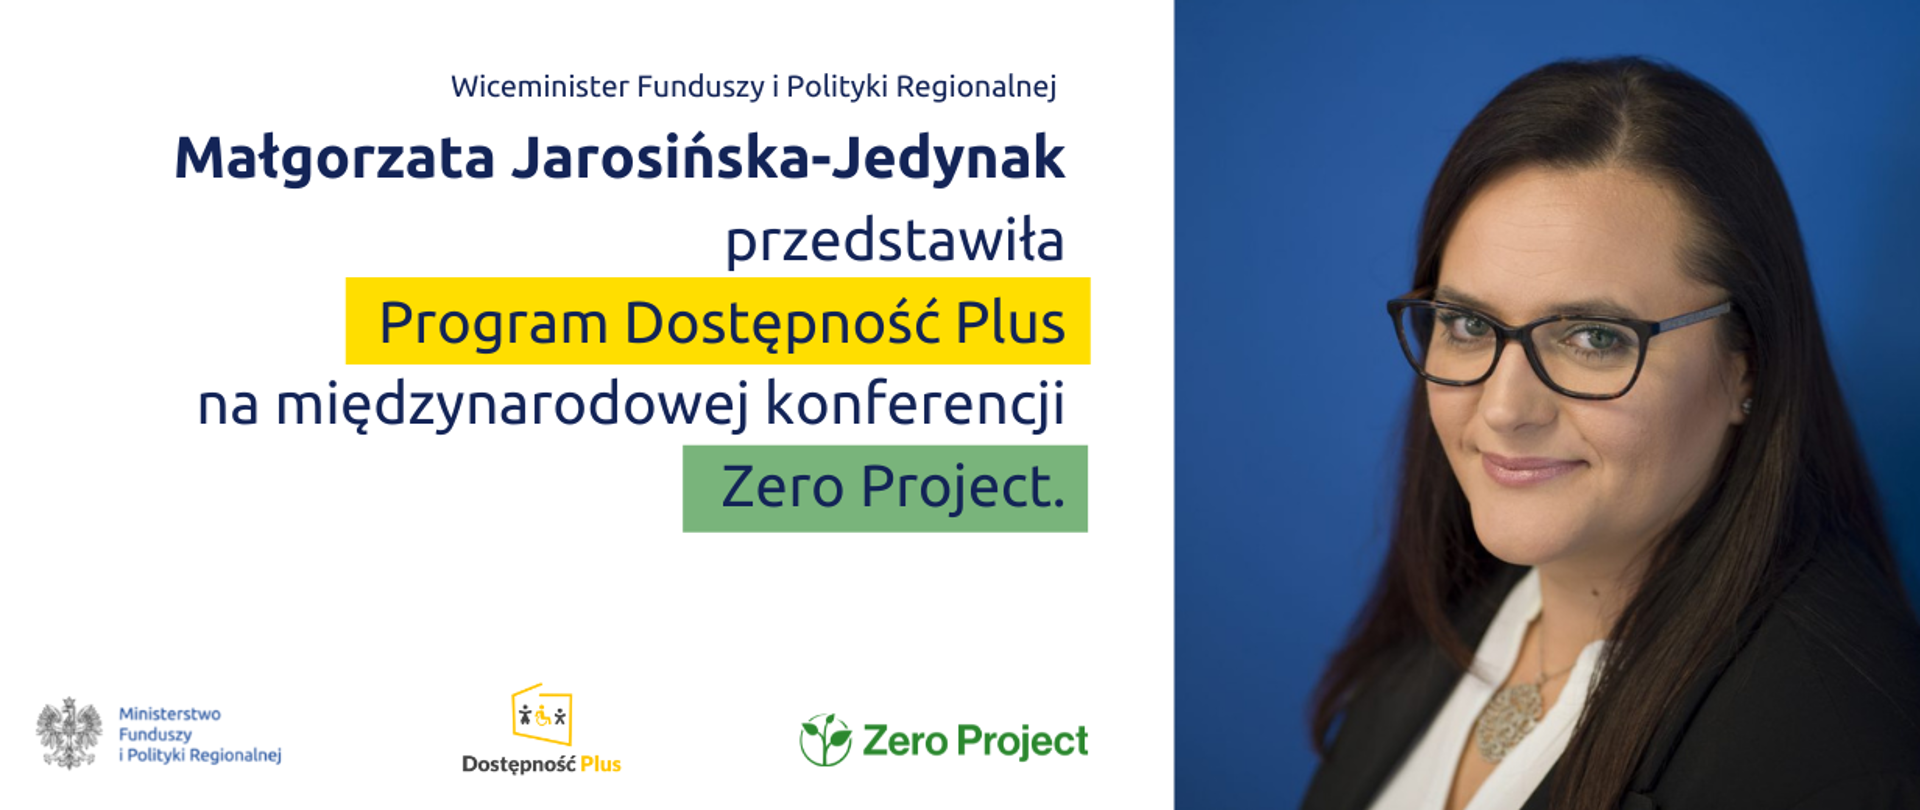 Zdjęcie wiceminister Małgorzaty Jarosińskiej-Jedynak i napis: wiceminister przedstawiła Program Dostępność Plus na międzynarodowej konferencji Zero Project.